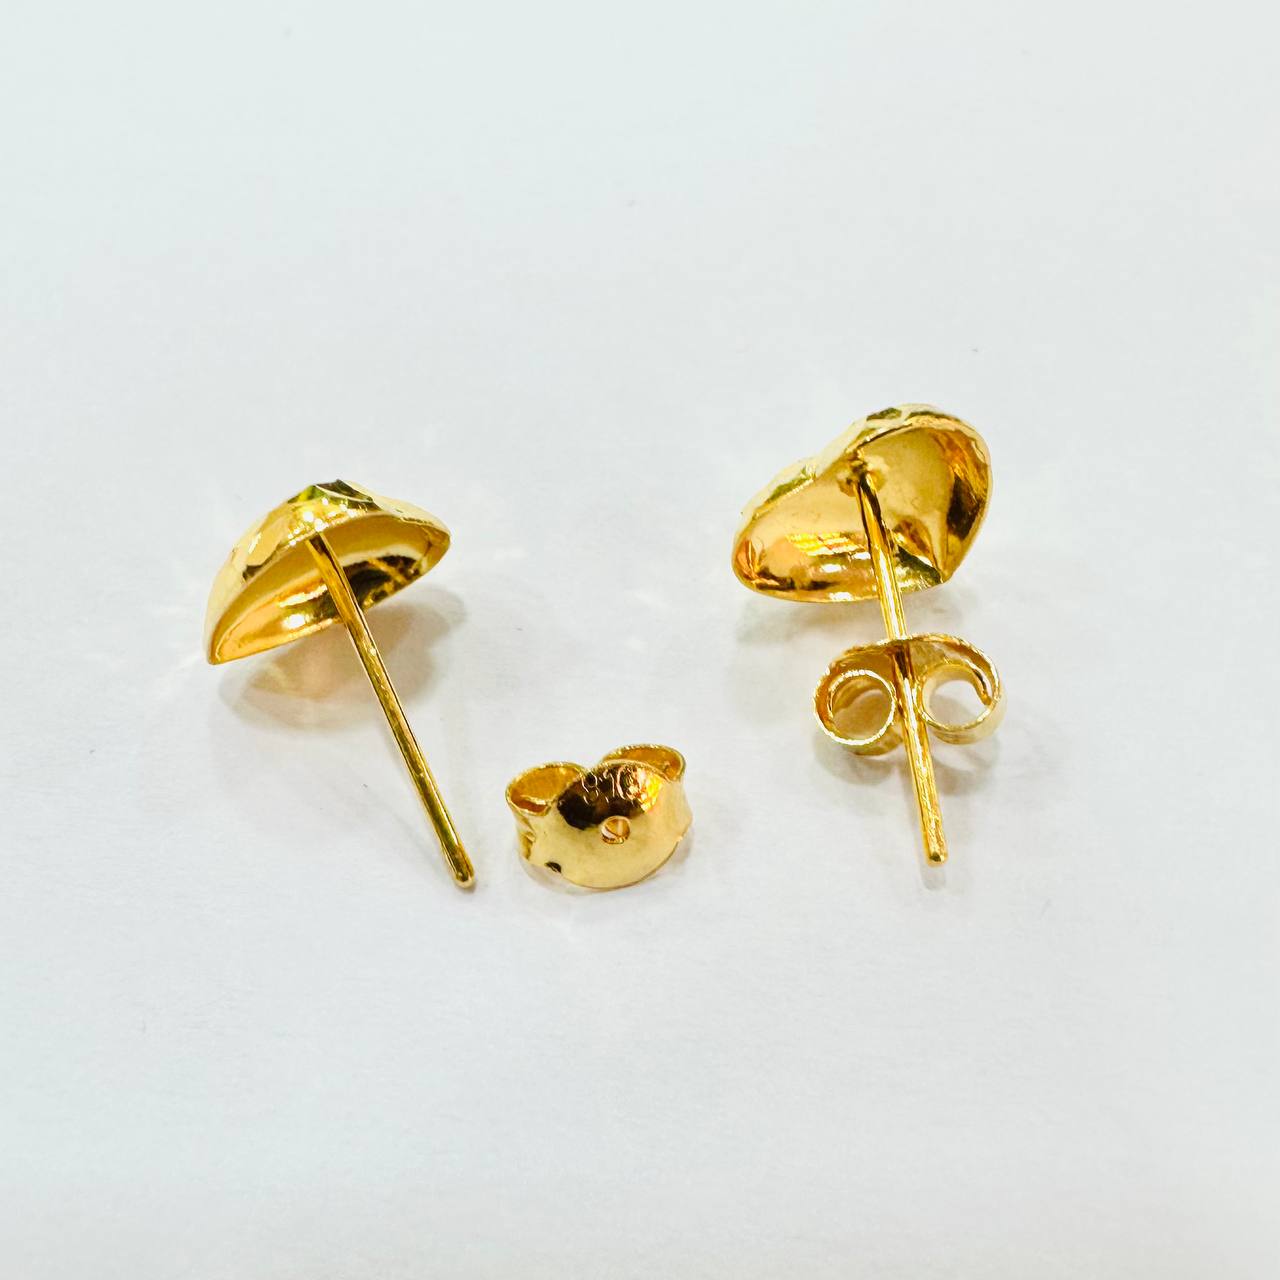 22k / 916 Gold Hollow stud earring-Earrings-Best Gold Shop